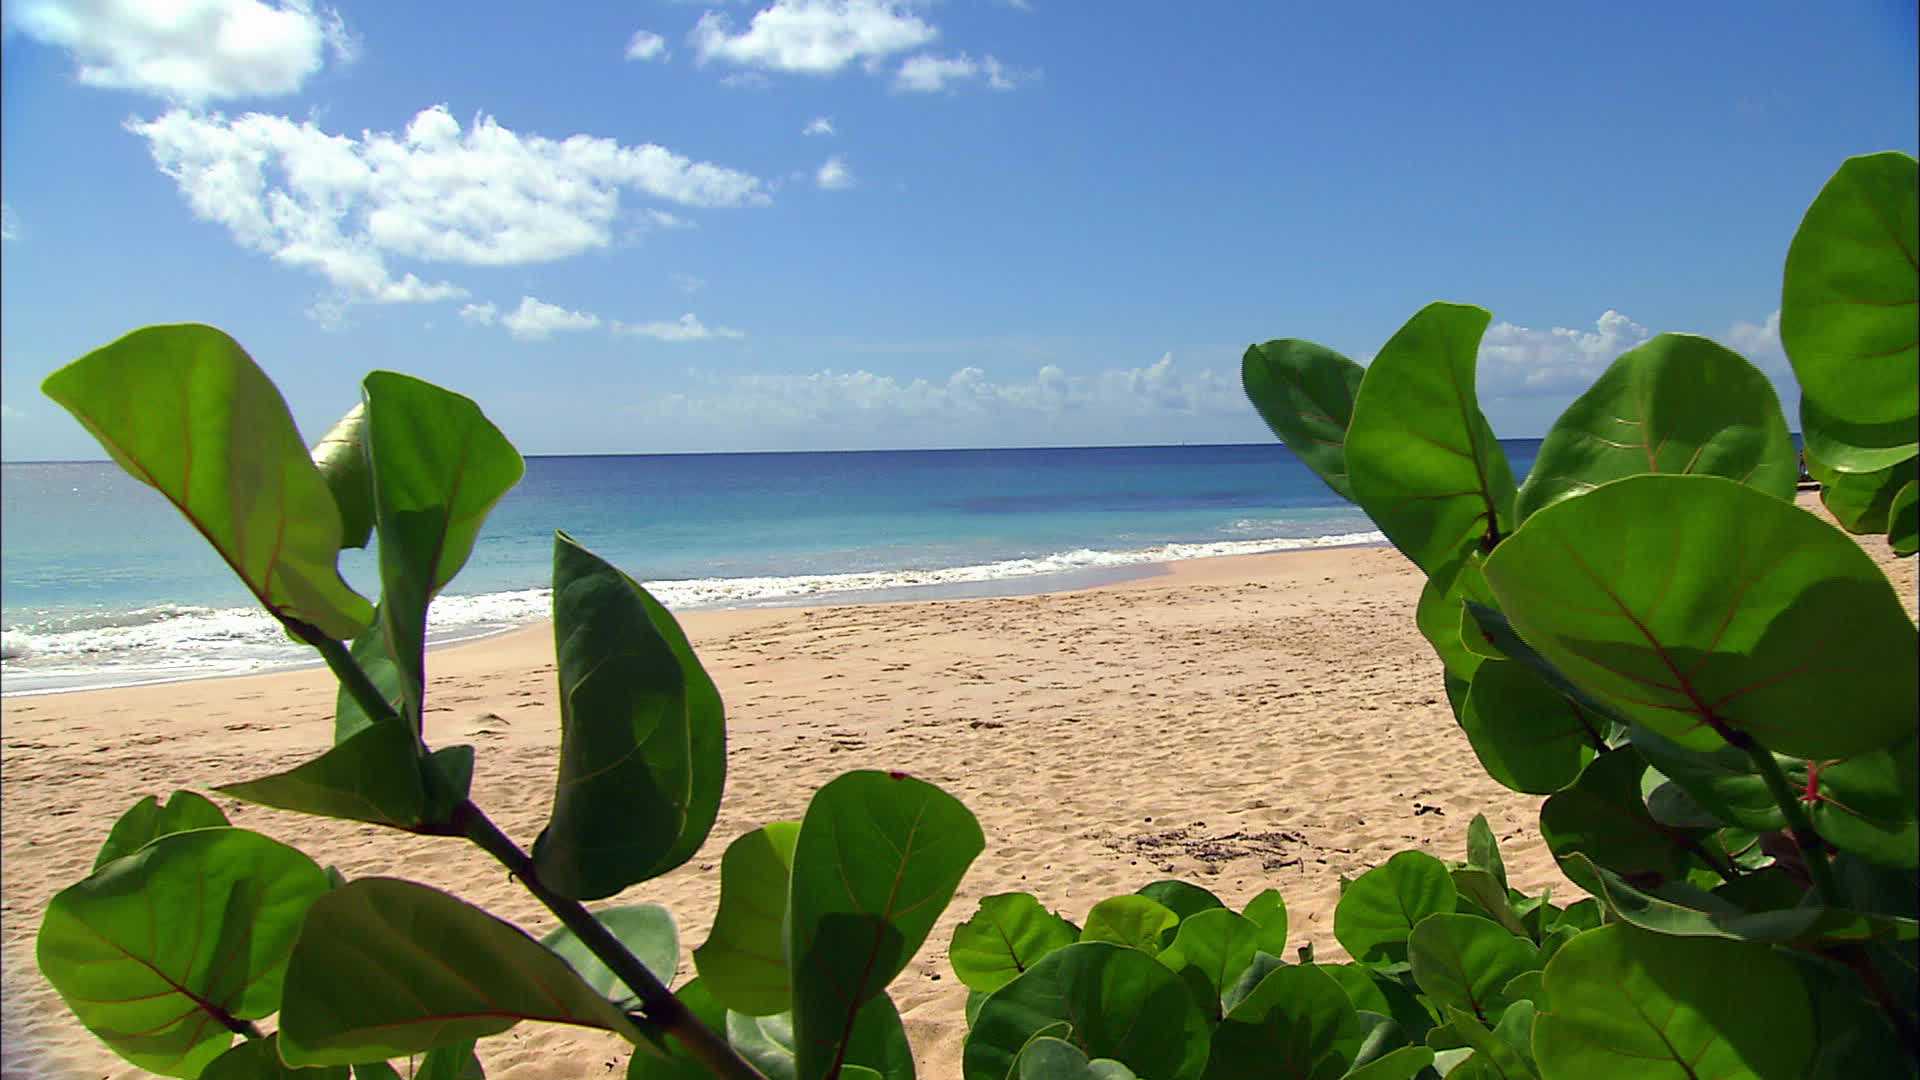 Beach of Grande terre - Martinique